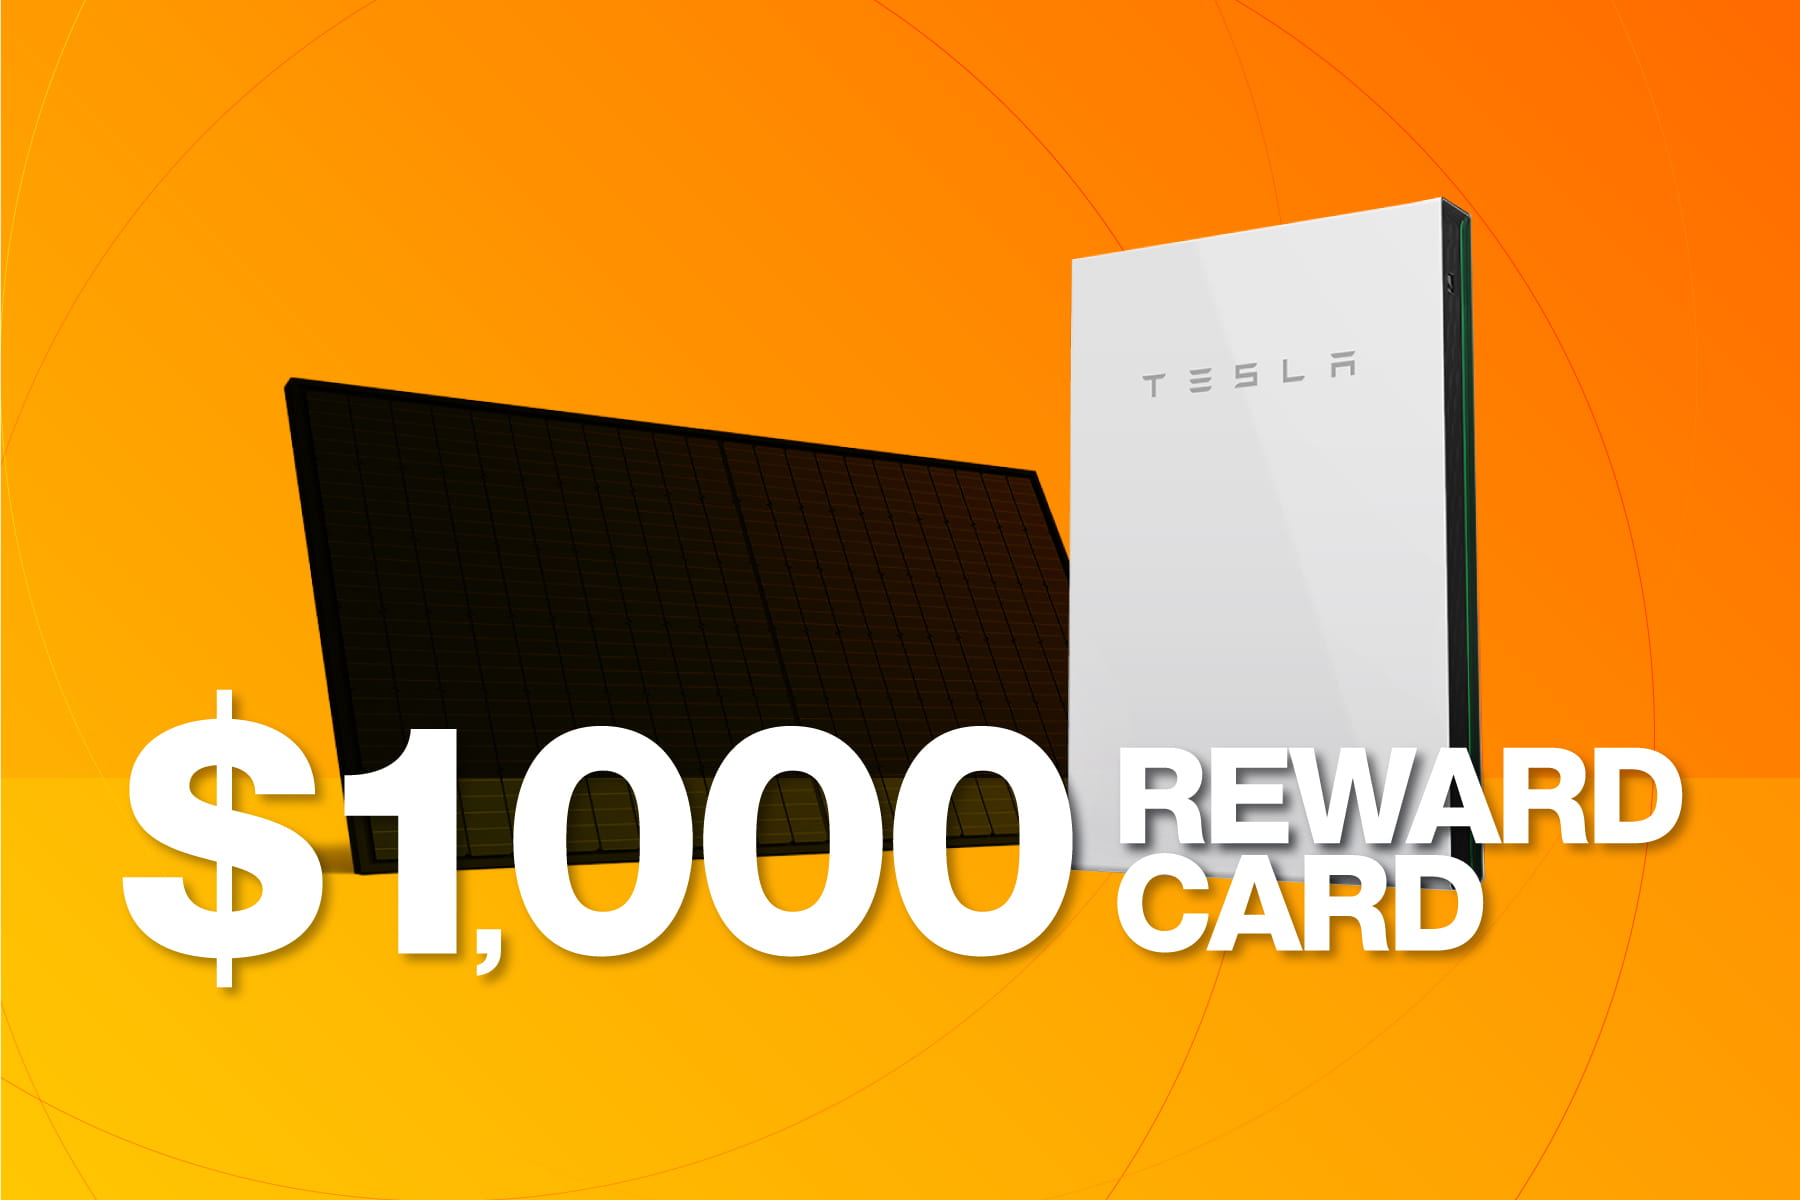 $1,000 Reward Card